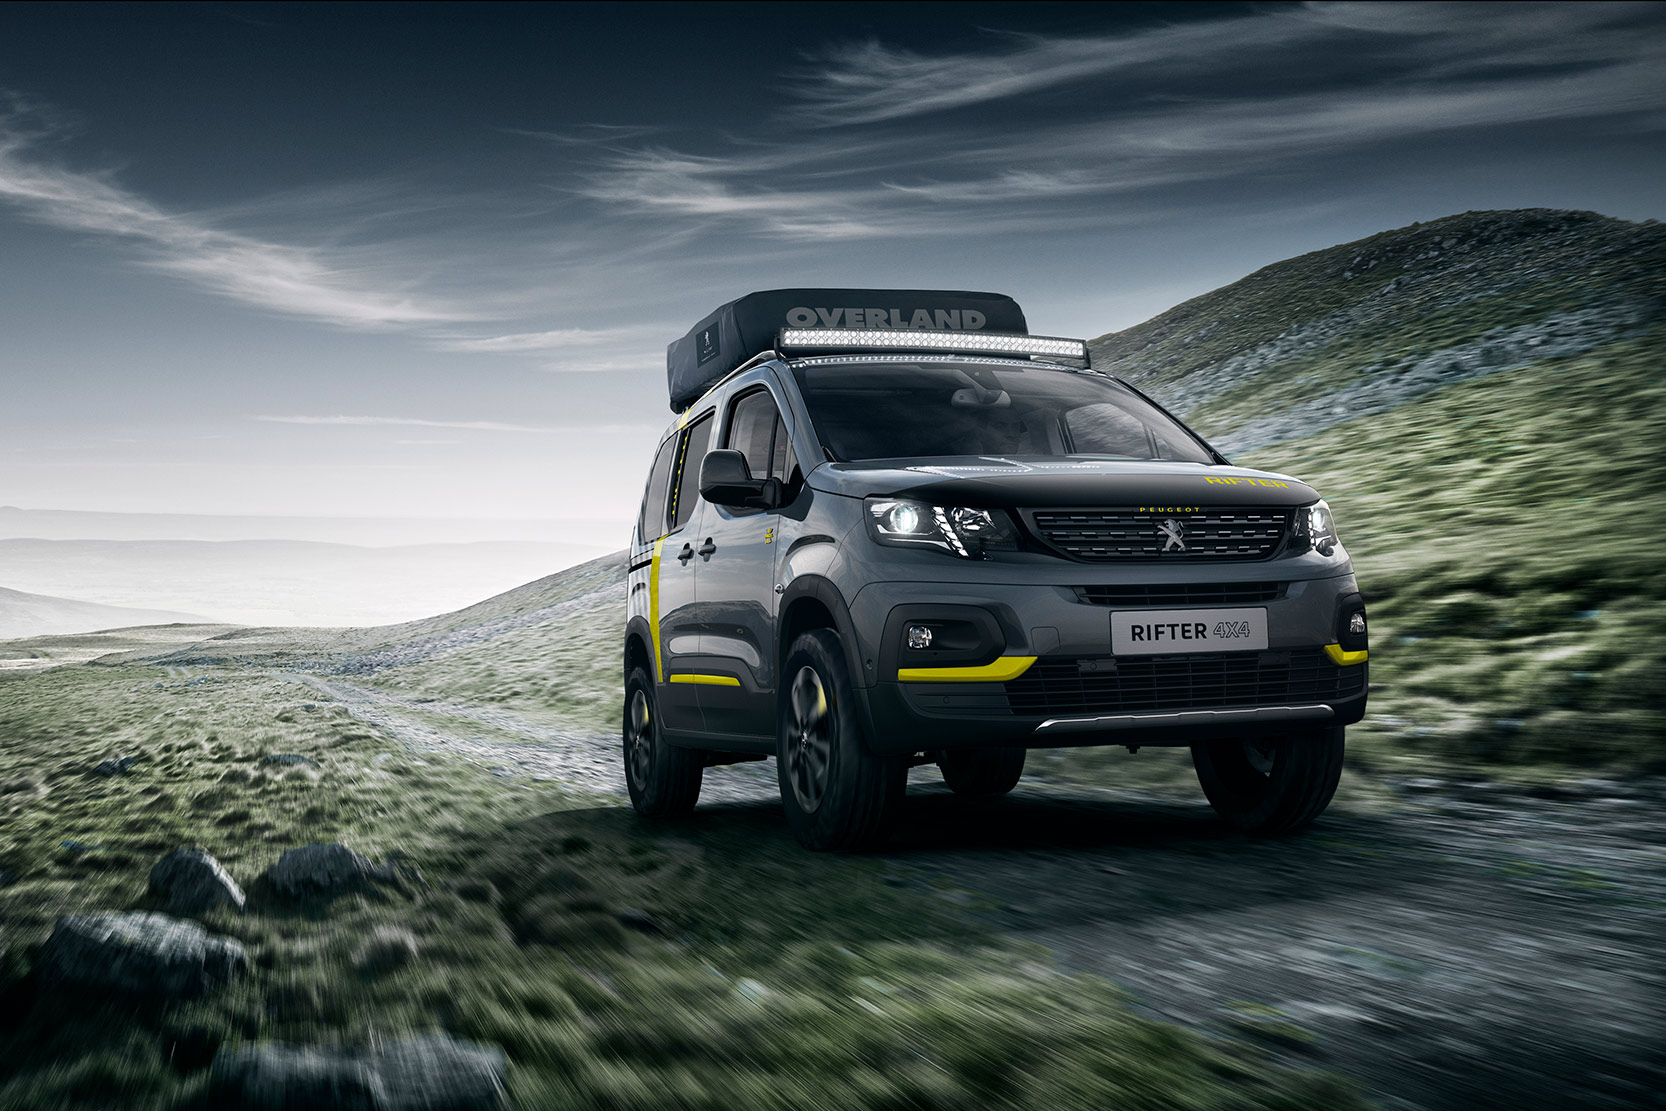 Image principale de l'actu: Peugeot Rifter 4x4 concept : parée pour l'aventure